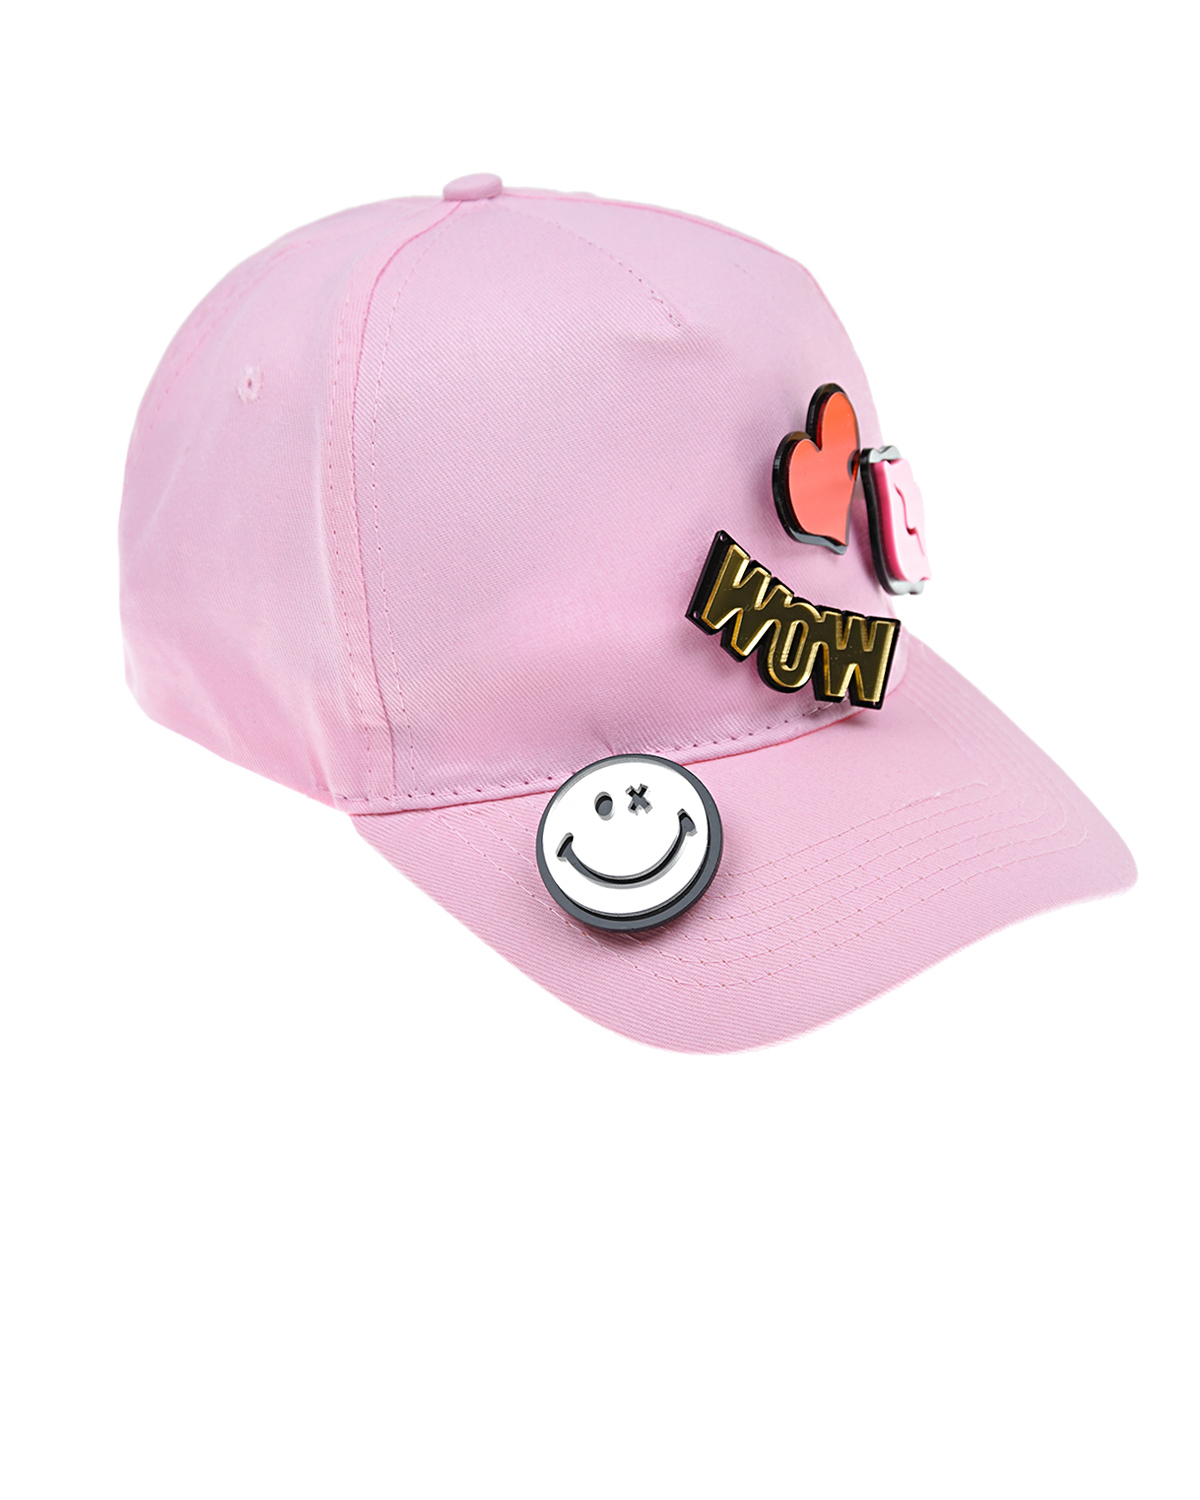 Розовая кепка с патчем WOW Regina детская, размер 56, цвет нет цвета